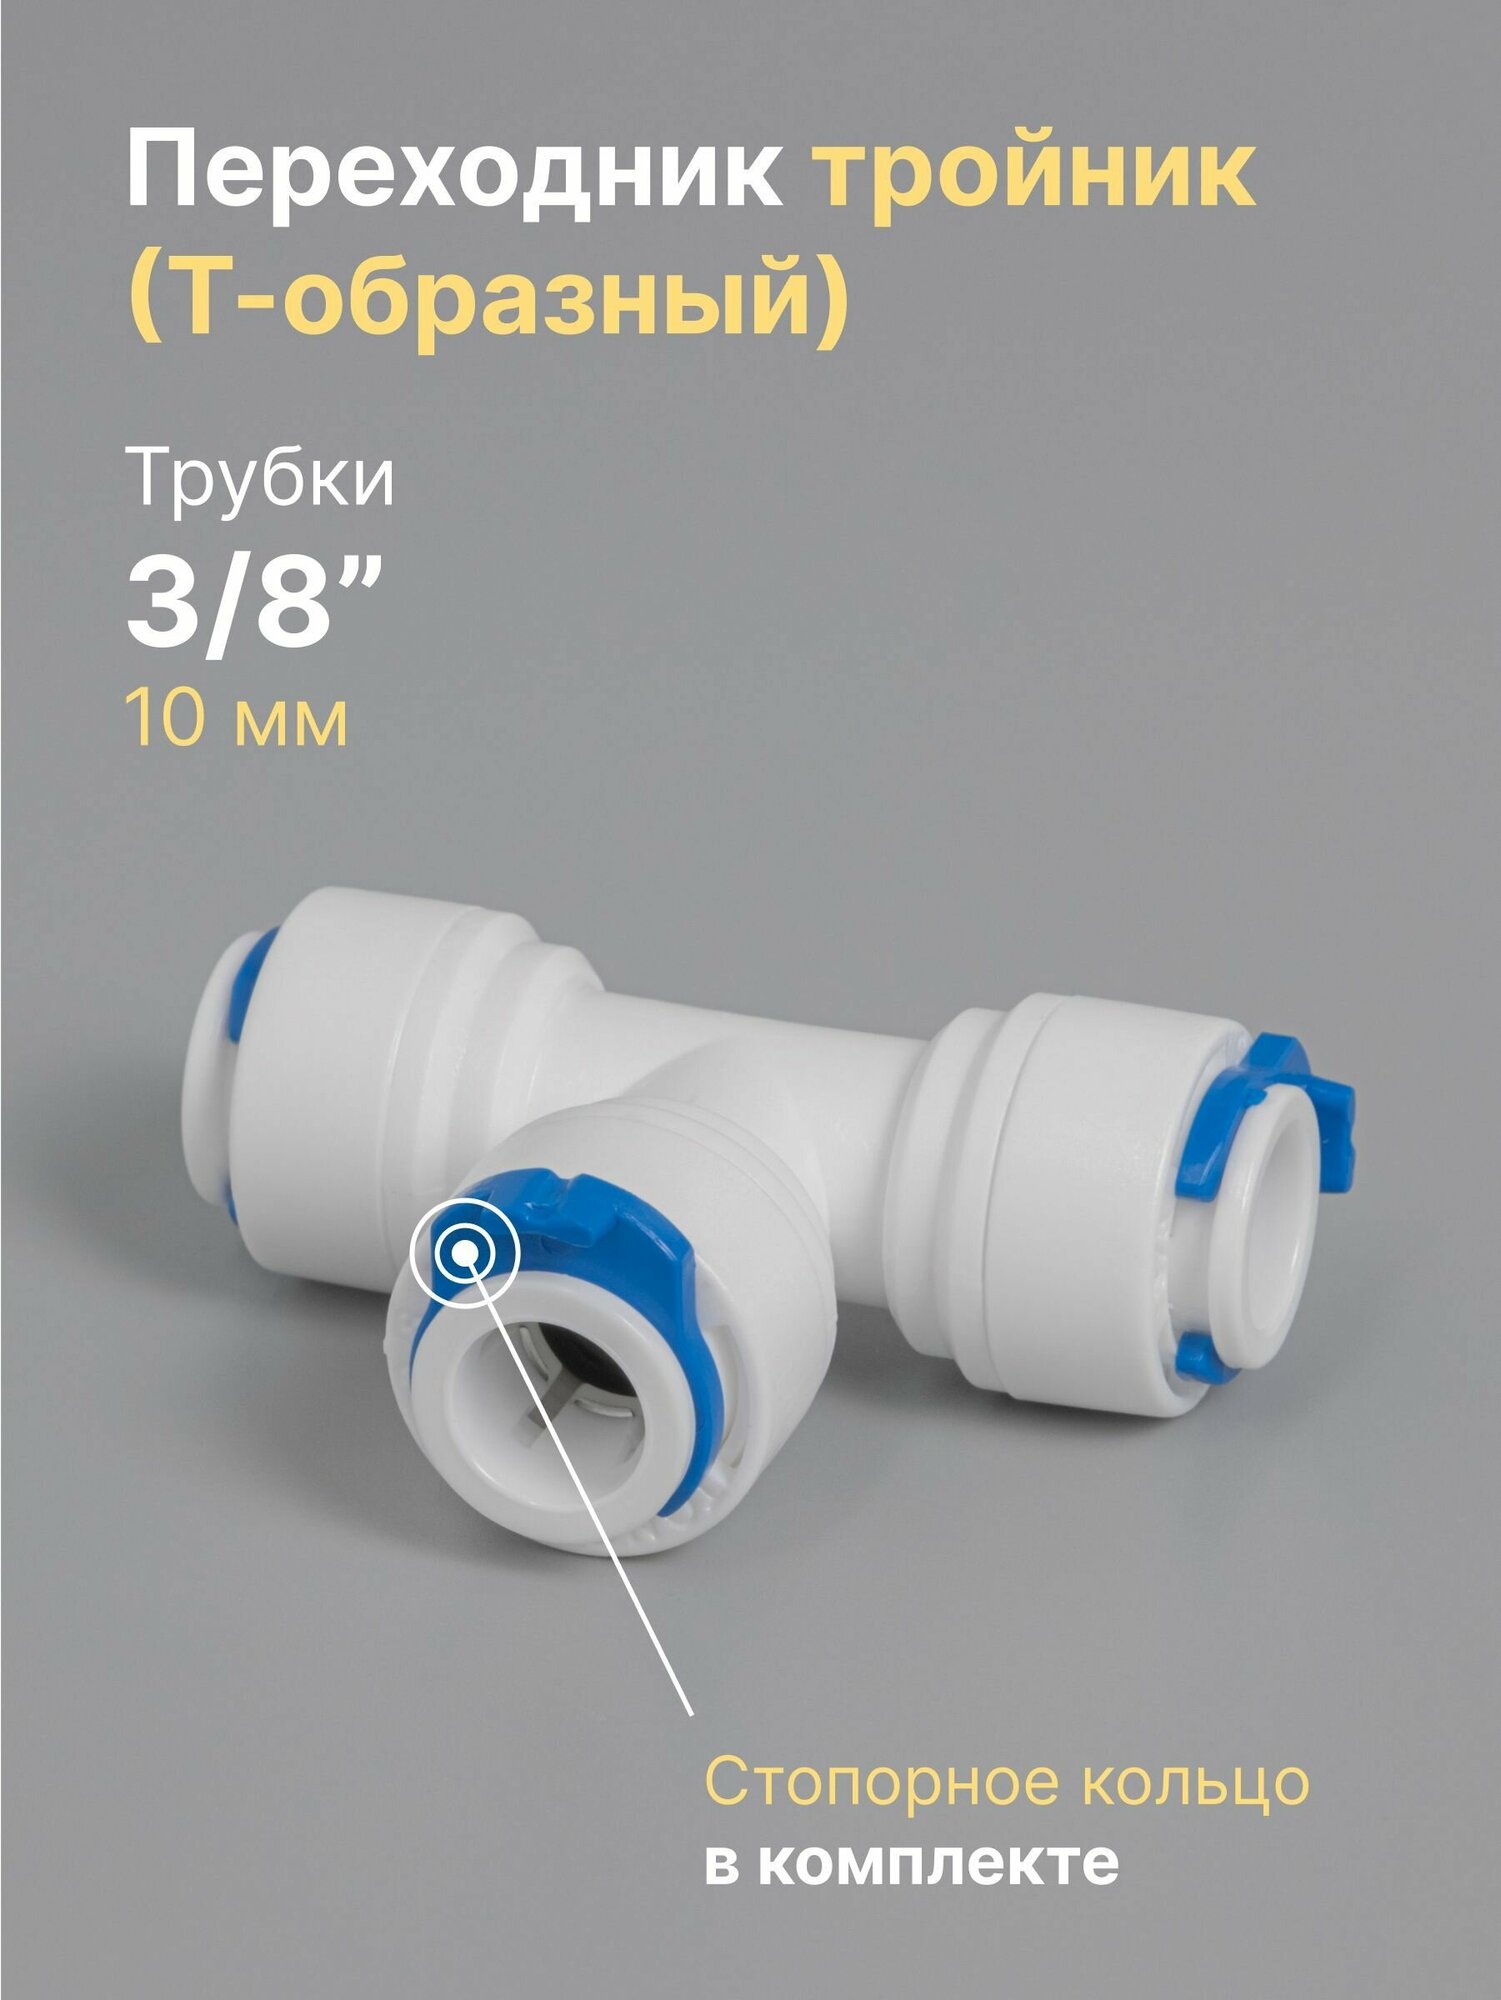 Переходник фитинг пластиковый тройник (Т-образный) для фильтра 3/8" трубка, обратный осмос, цанга, сантехническое соединение